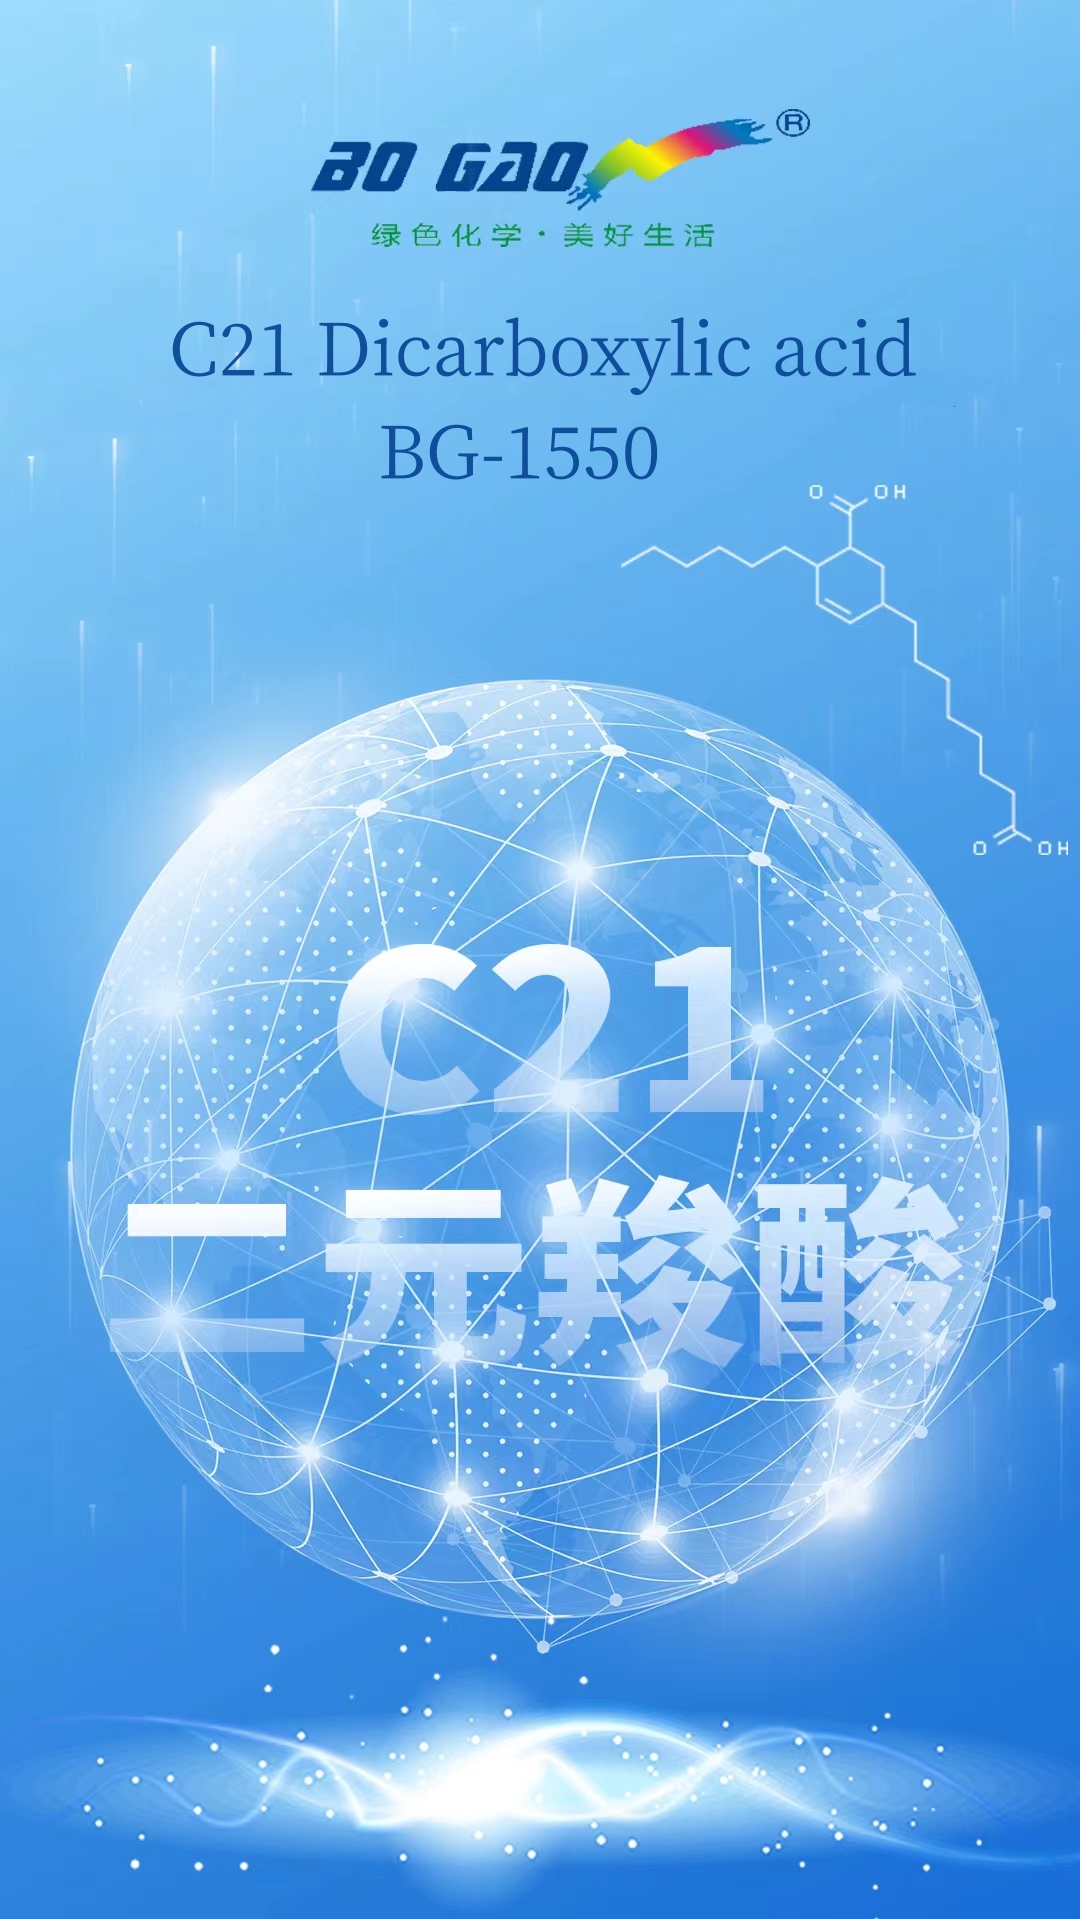 BoGao বহুমুখী অ্যাপ্লিকেশন-C21 ডিকারবক্সিলিক অ্যাসিড/BG-1550 চালু করেছে